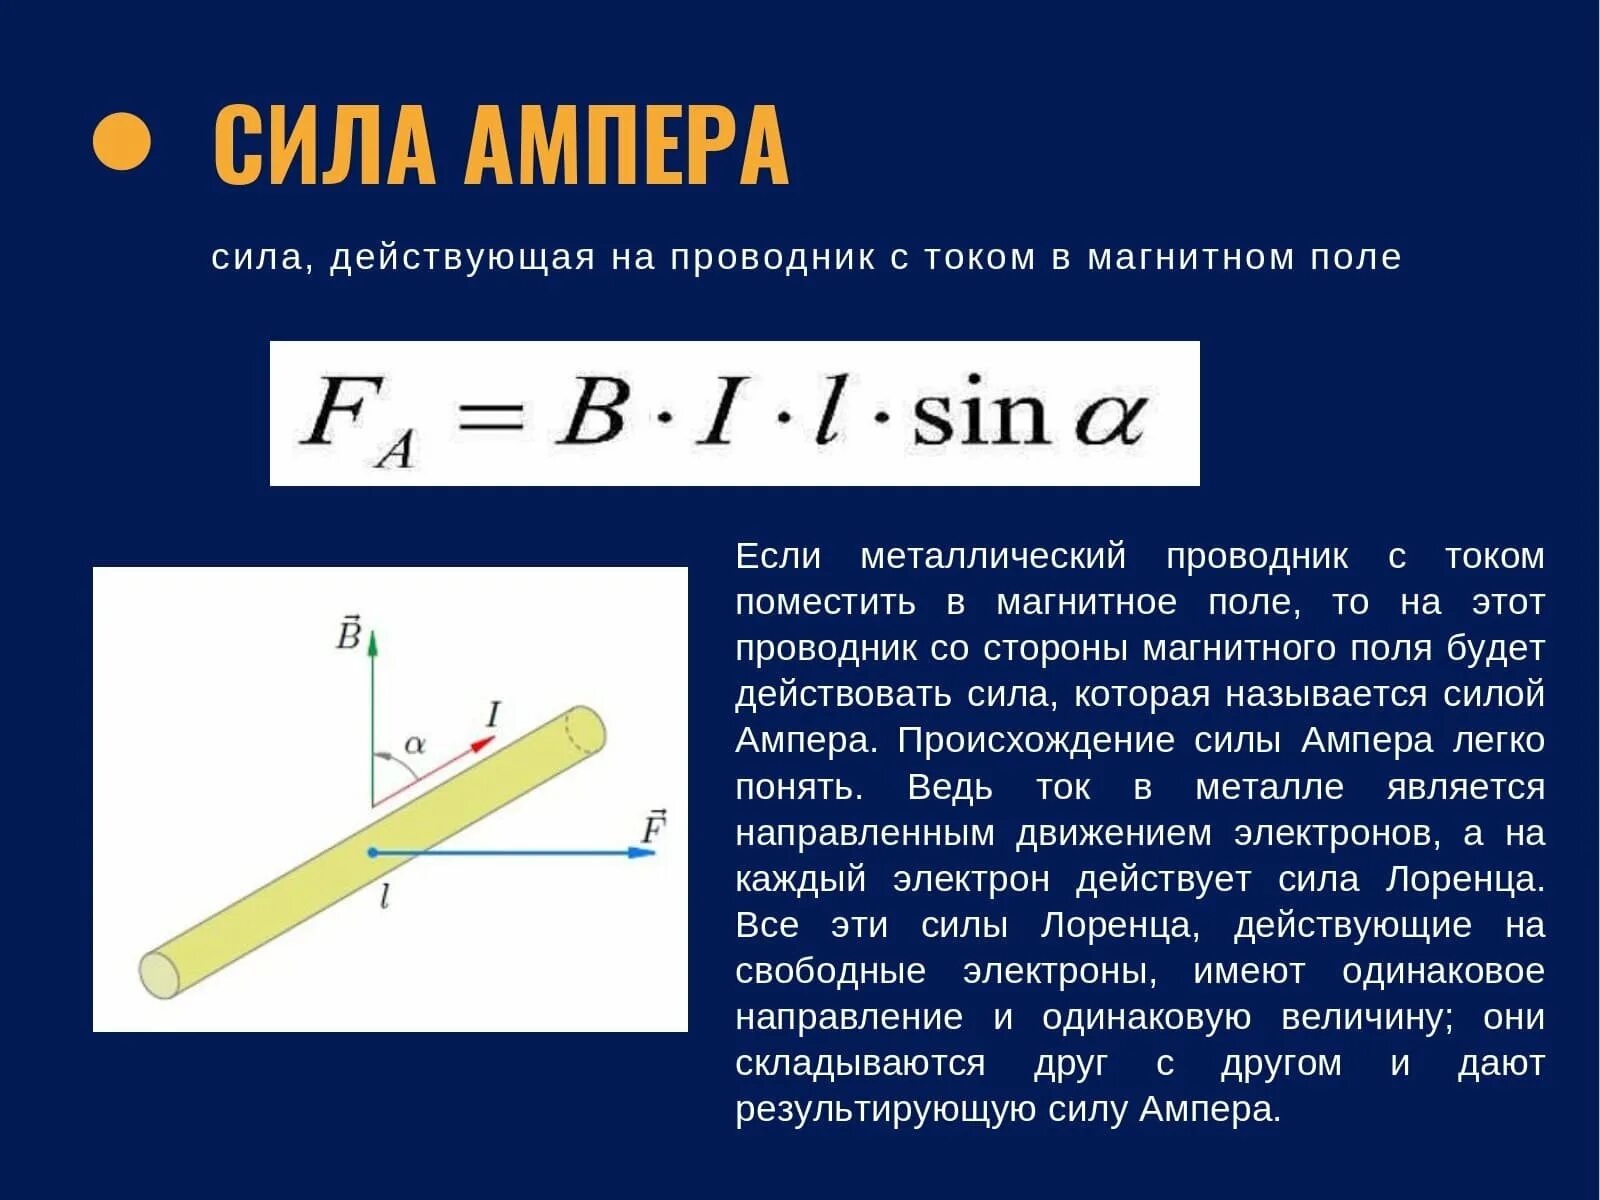 Пример ампера. Сила Ампера формула 8 класс. Сила Ампера в магнитном поле формула. Стла а пера. Как определяется сила Ампера.